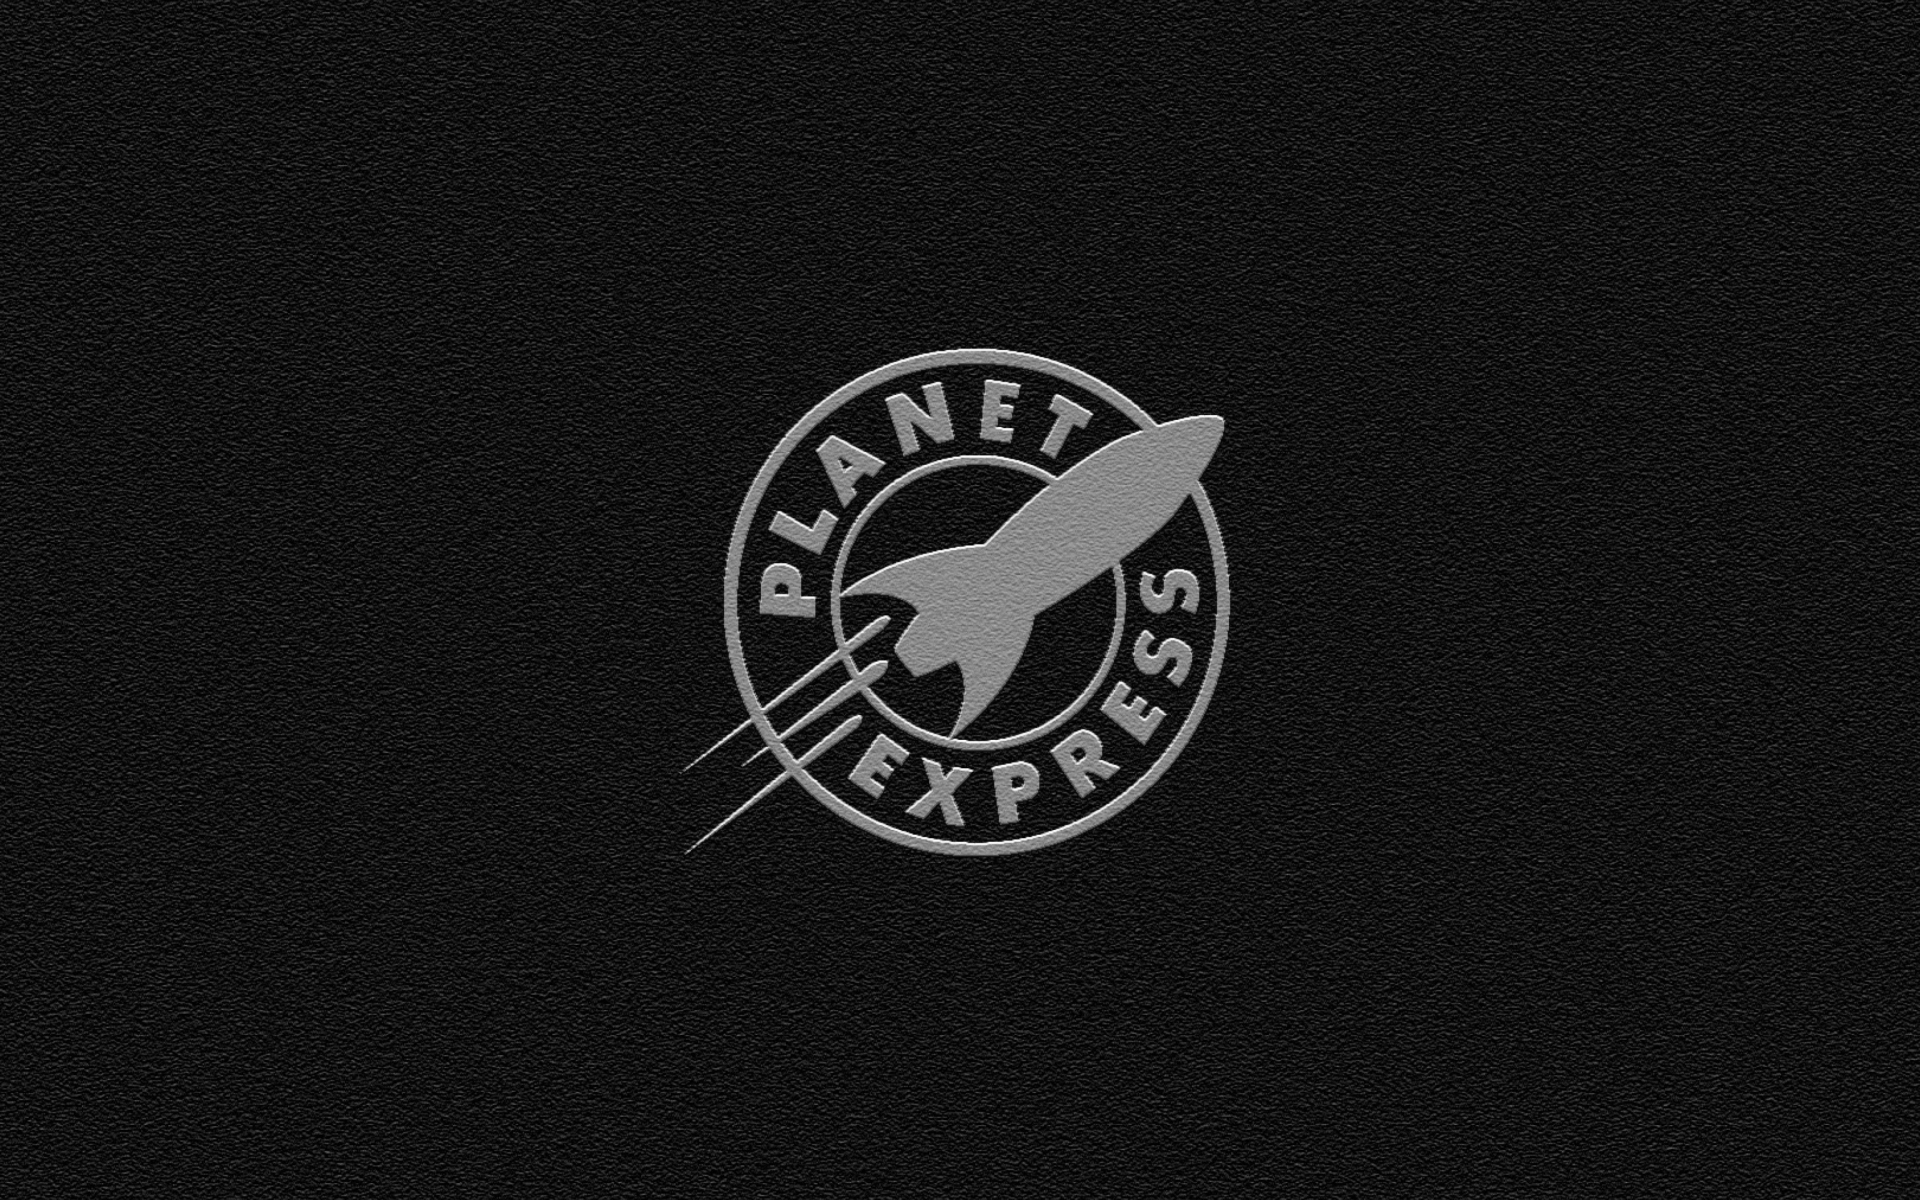 Sfondi Planet Express 1920x1200